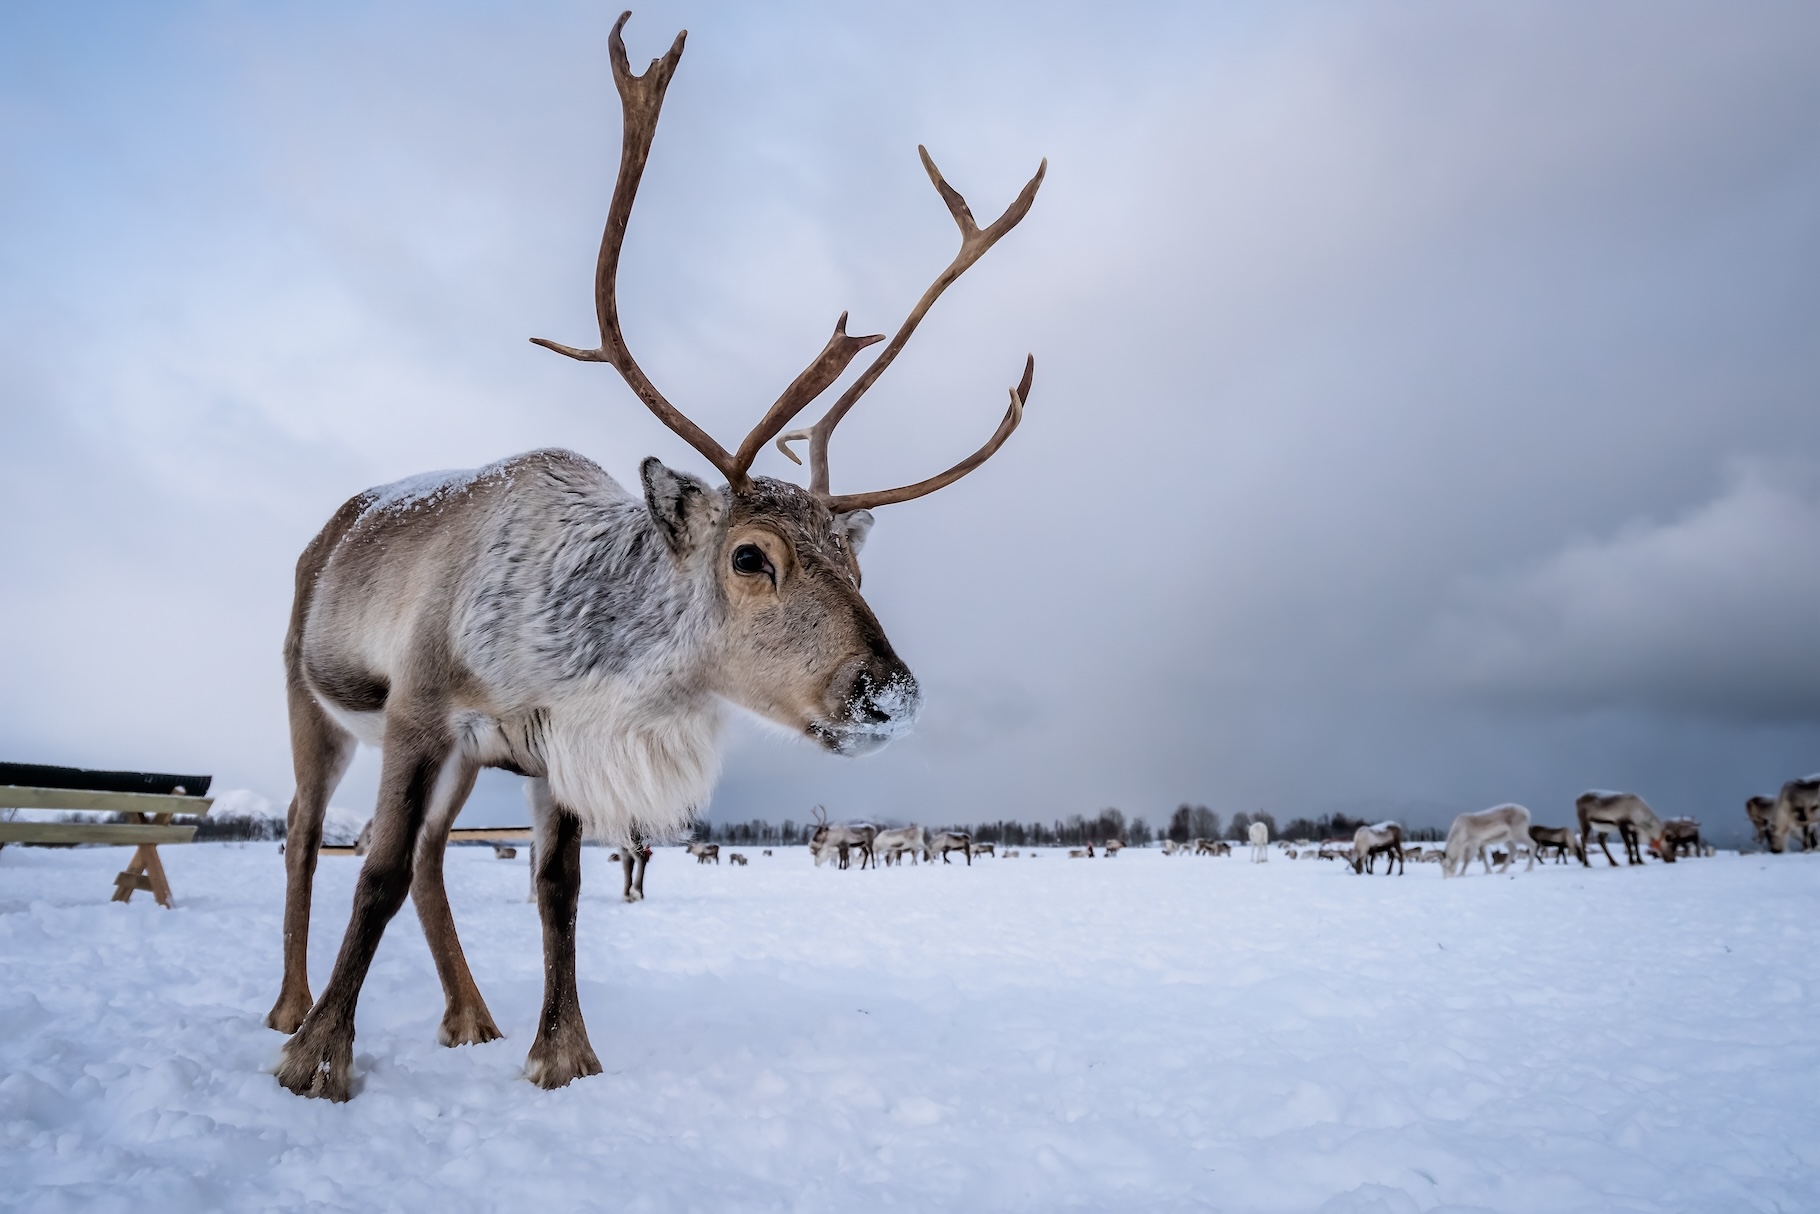 Les rennes apparaissent comme des animaux indispensables au maintien de l’écosystème arctique. © Pav-Pro Photography, Adobe Stock